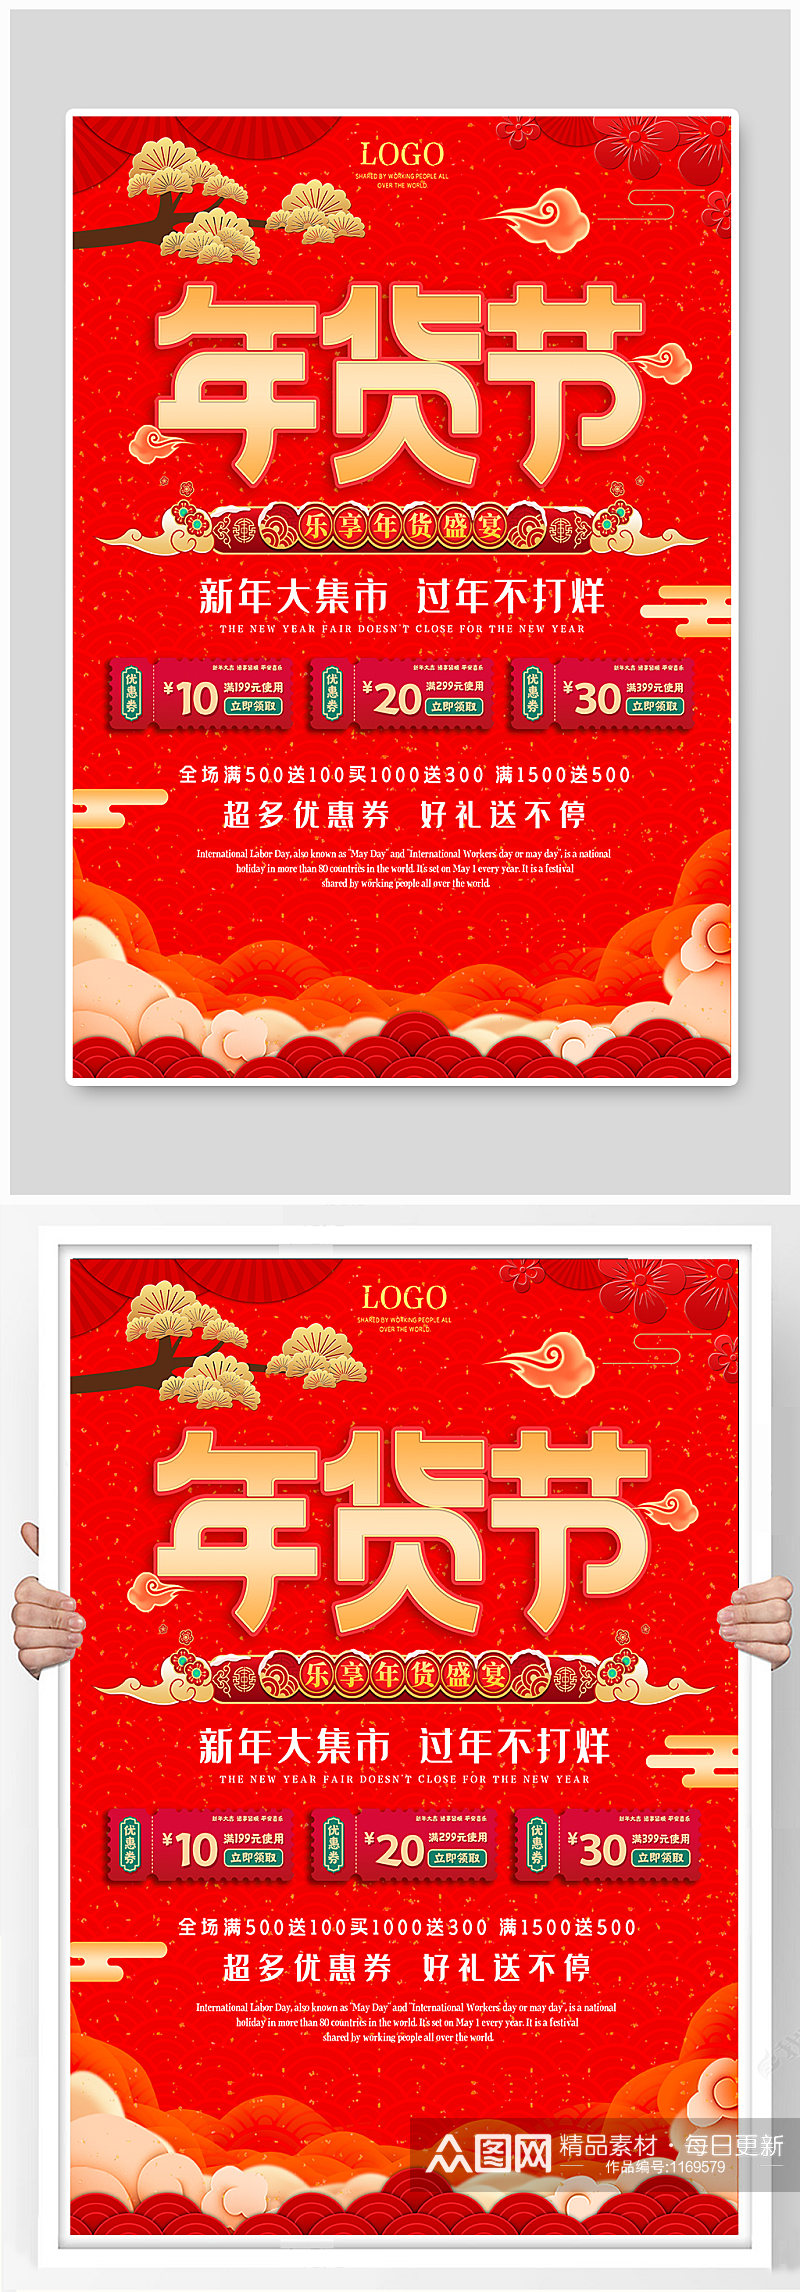 春节优惠宣传年货节传统节日促销海报素材